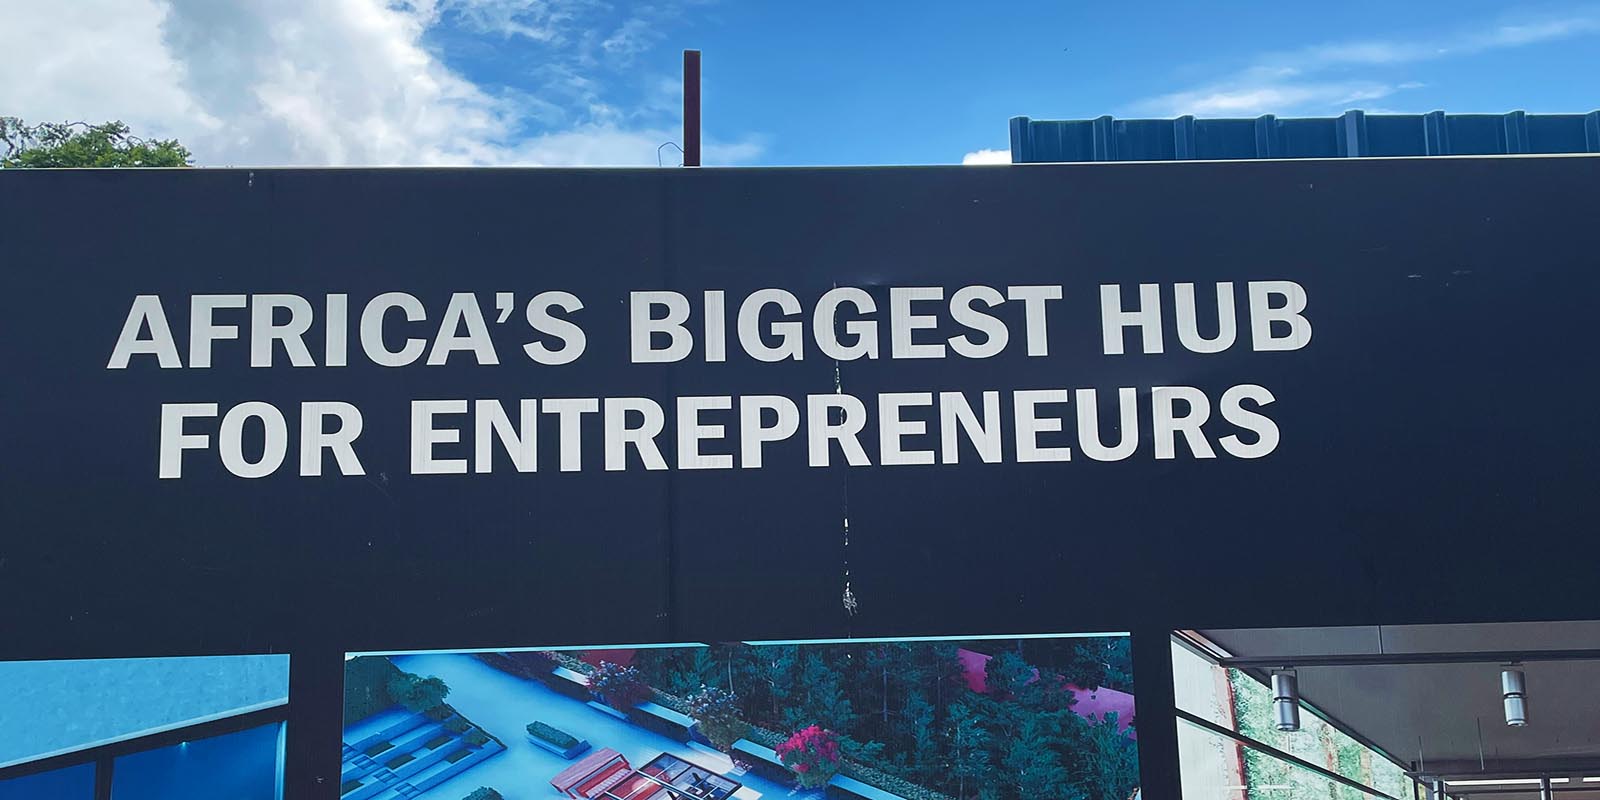 Africa's biggest hub for Entrepreneurs